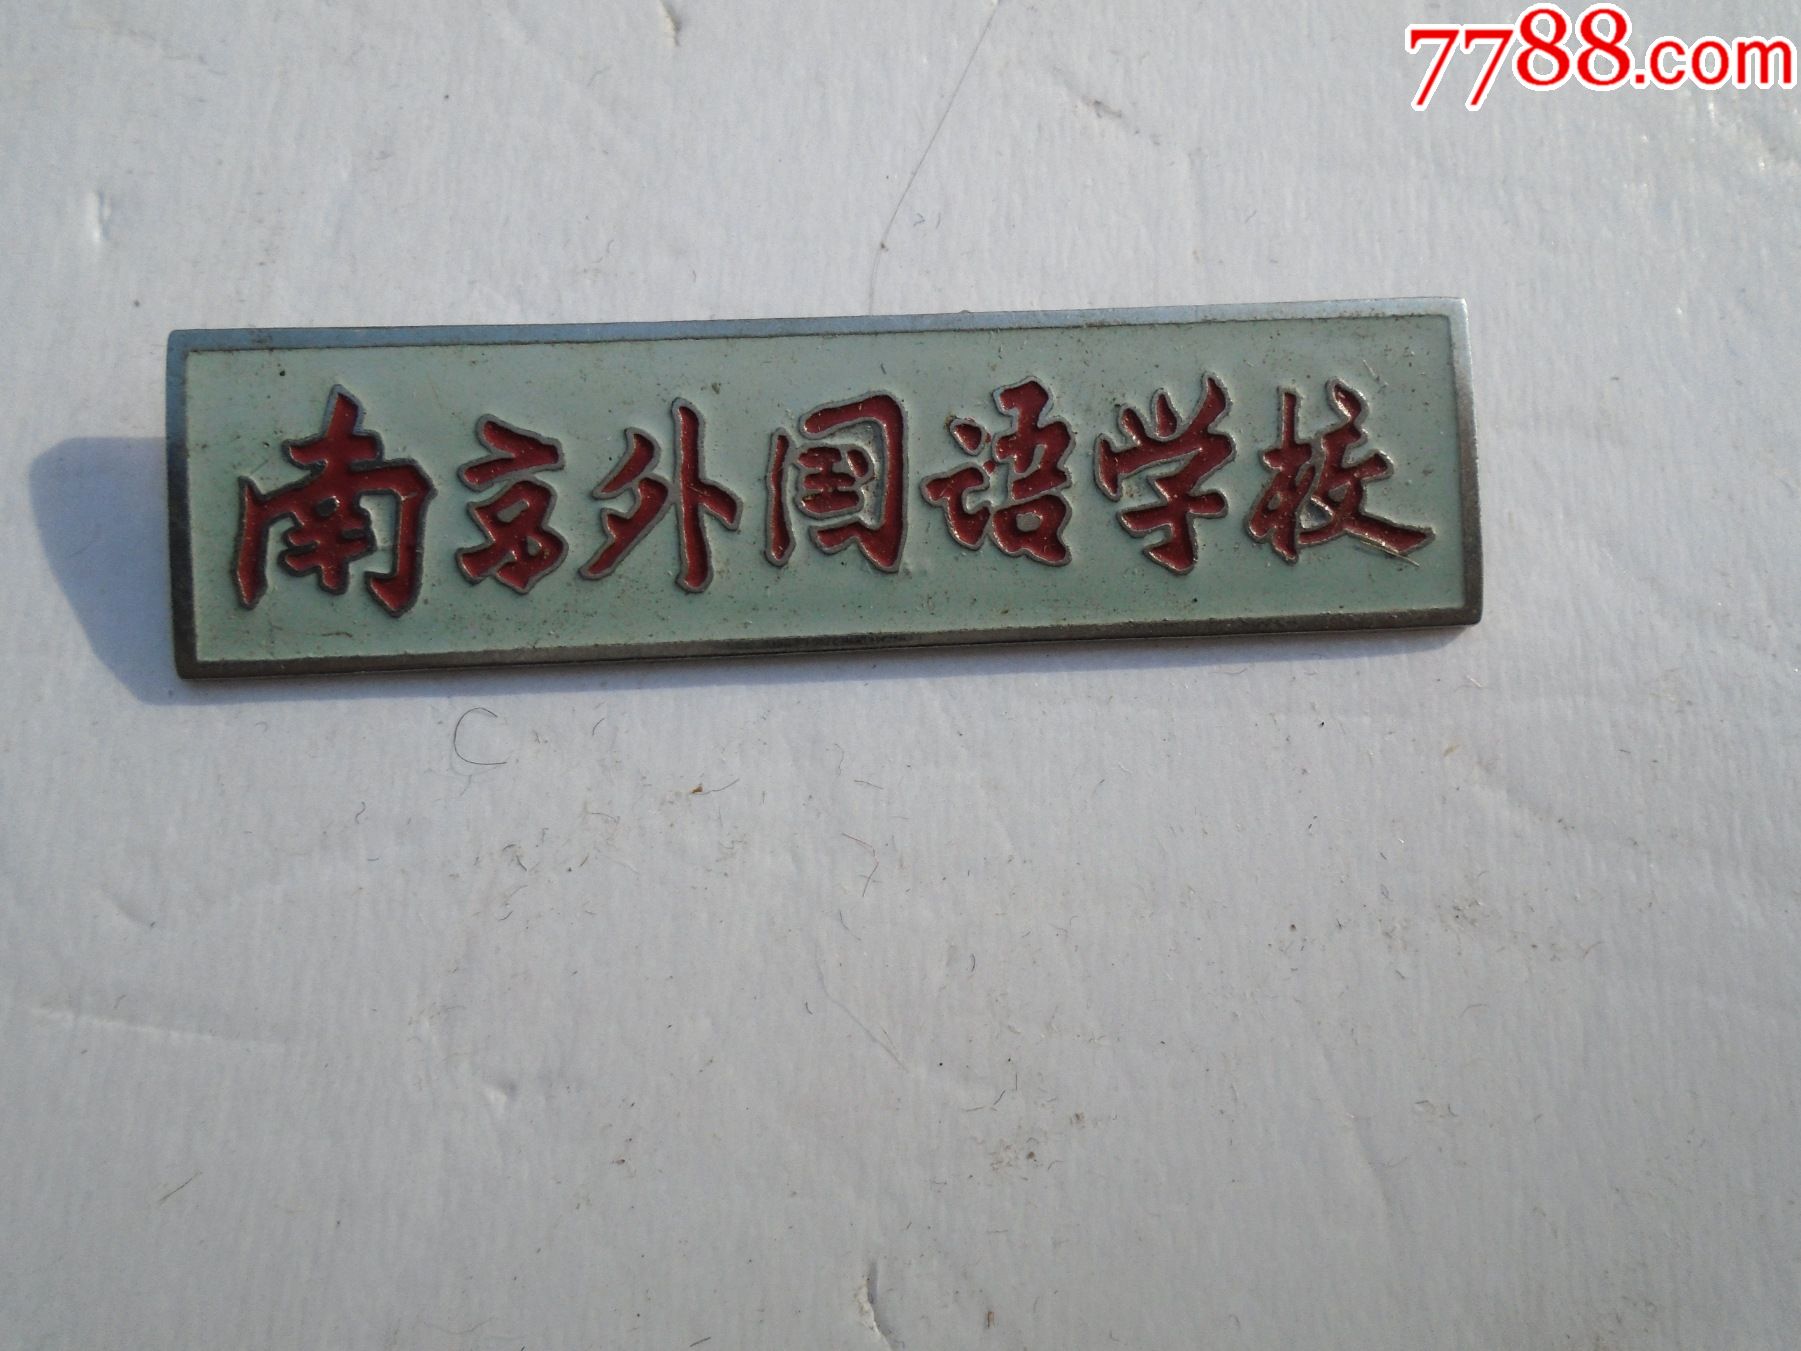 南京外国语学校早期老校徽包真包老尺寸513厘米材质黄铜白底红